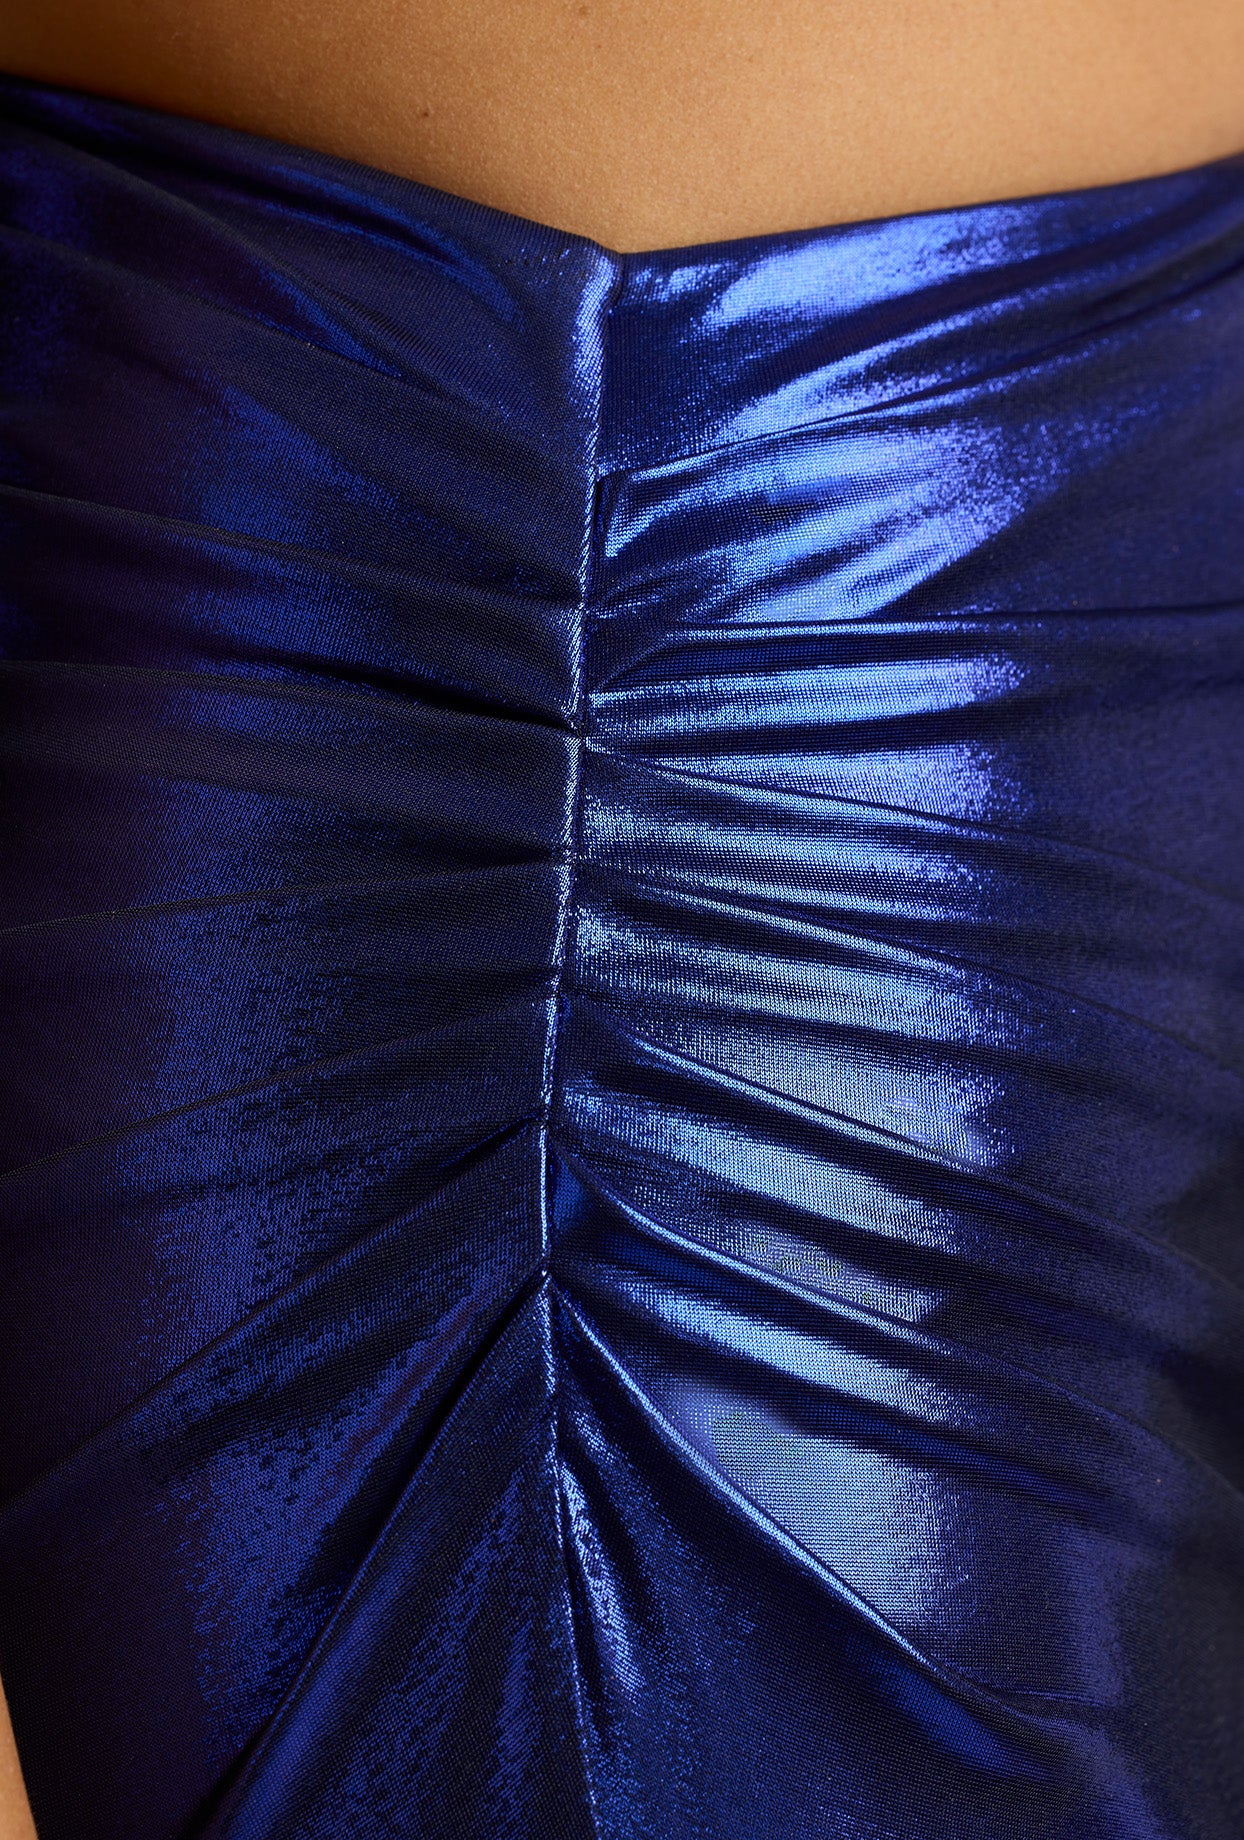 Drapowana sukienka maxi z metalicznego dżerseju w kolorze elektrycznego błękitu